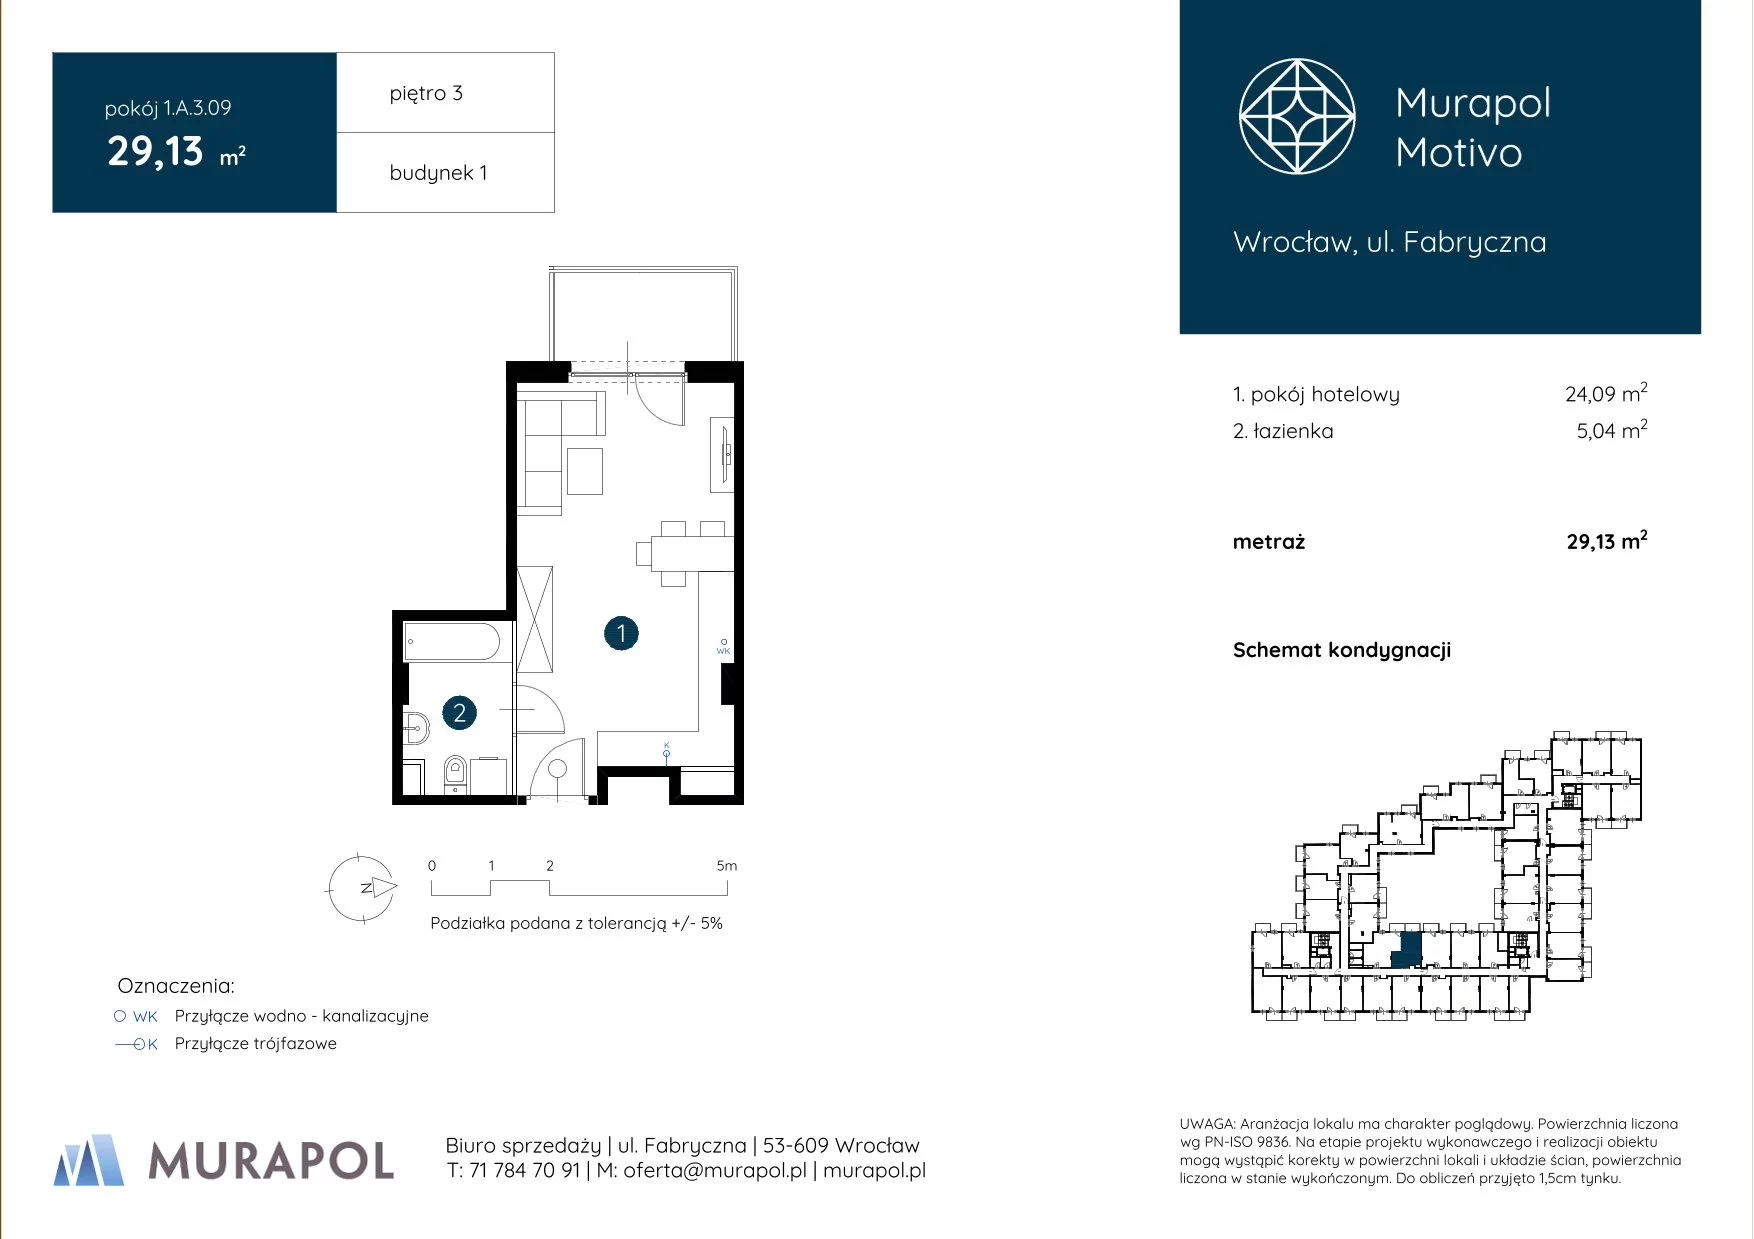 Apartament inwestycyjny 29,13 m², piętro 3, oferta nr 1.A.3.09, Murapol Motivo, Wrocław, Muchobór Mały, Fabryczna, ul. Fabryczna